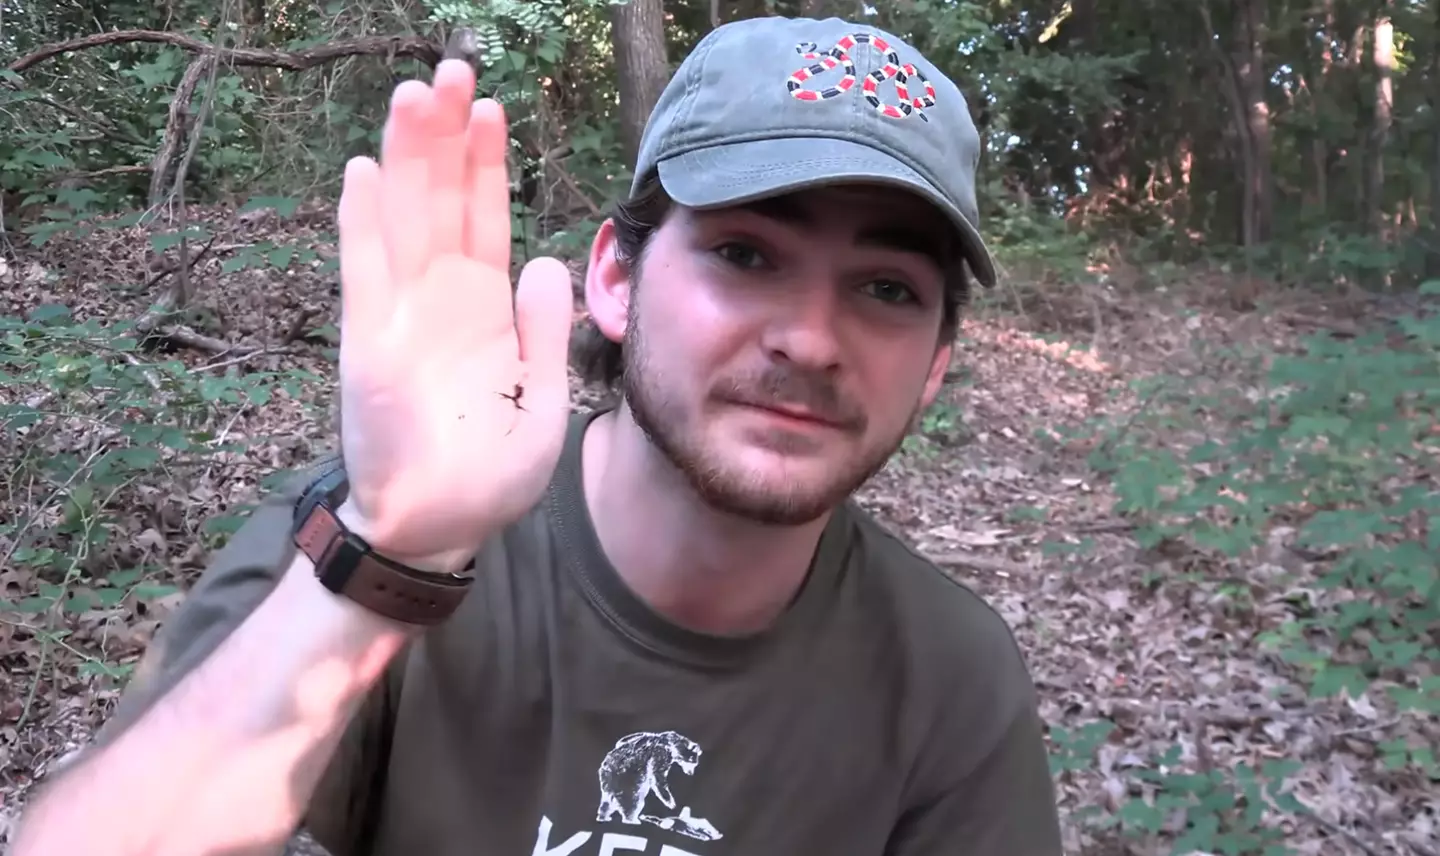 YouTuber Jack Schonhoff was bitten by a black widow spider.